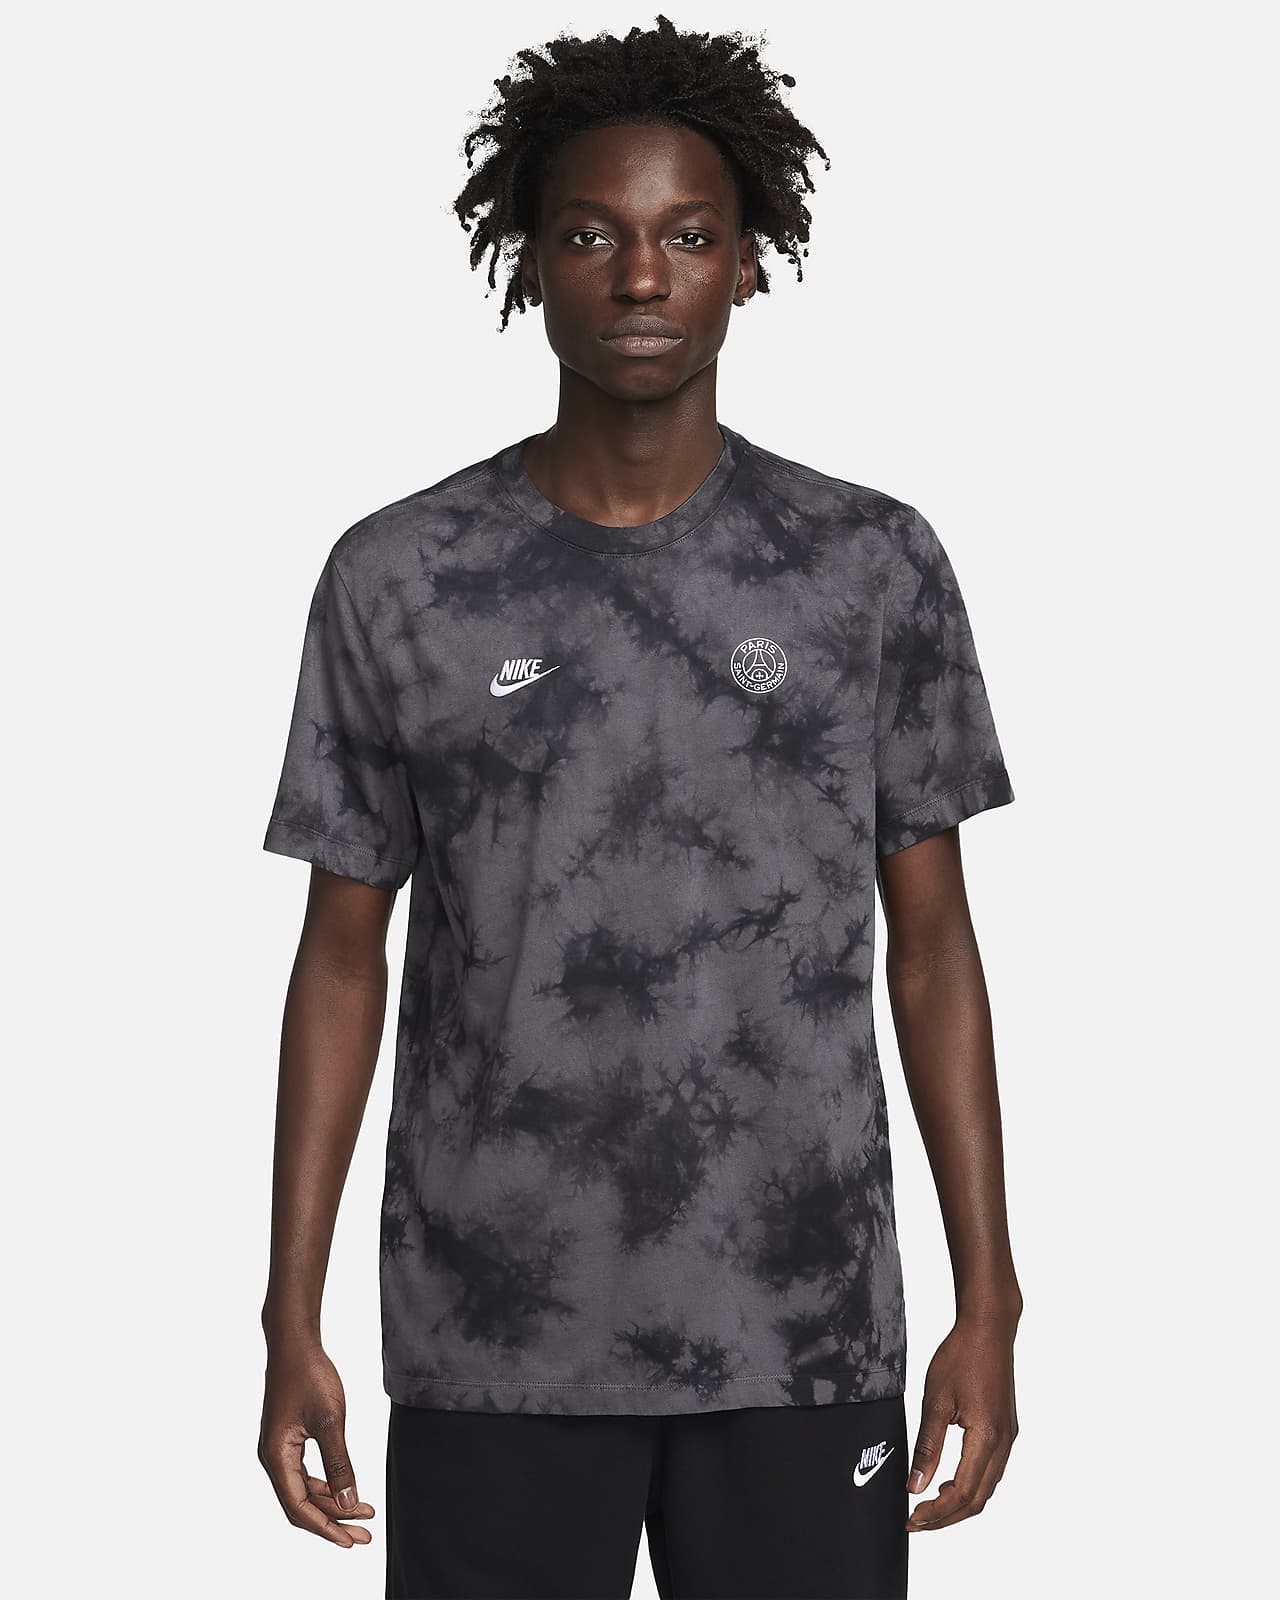 PSG Essential T-Shirt for Sale by Paris Saint Germain PSG